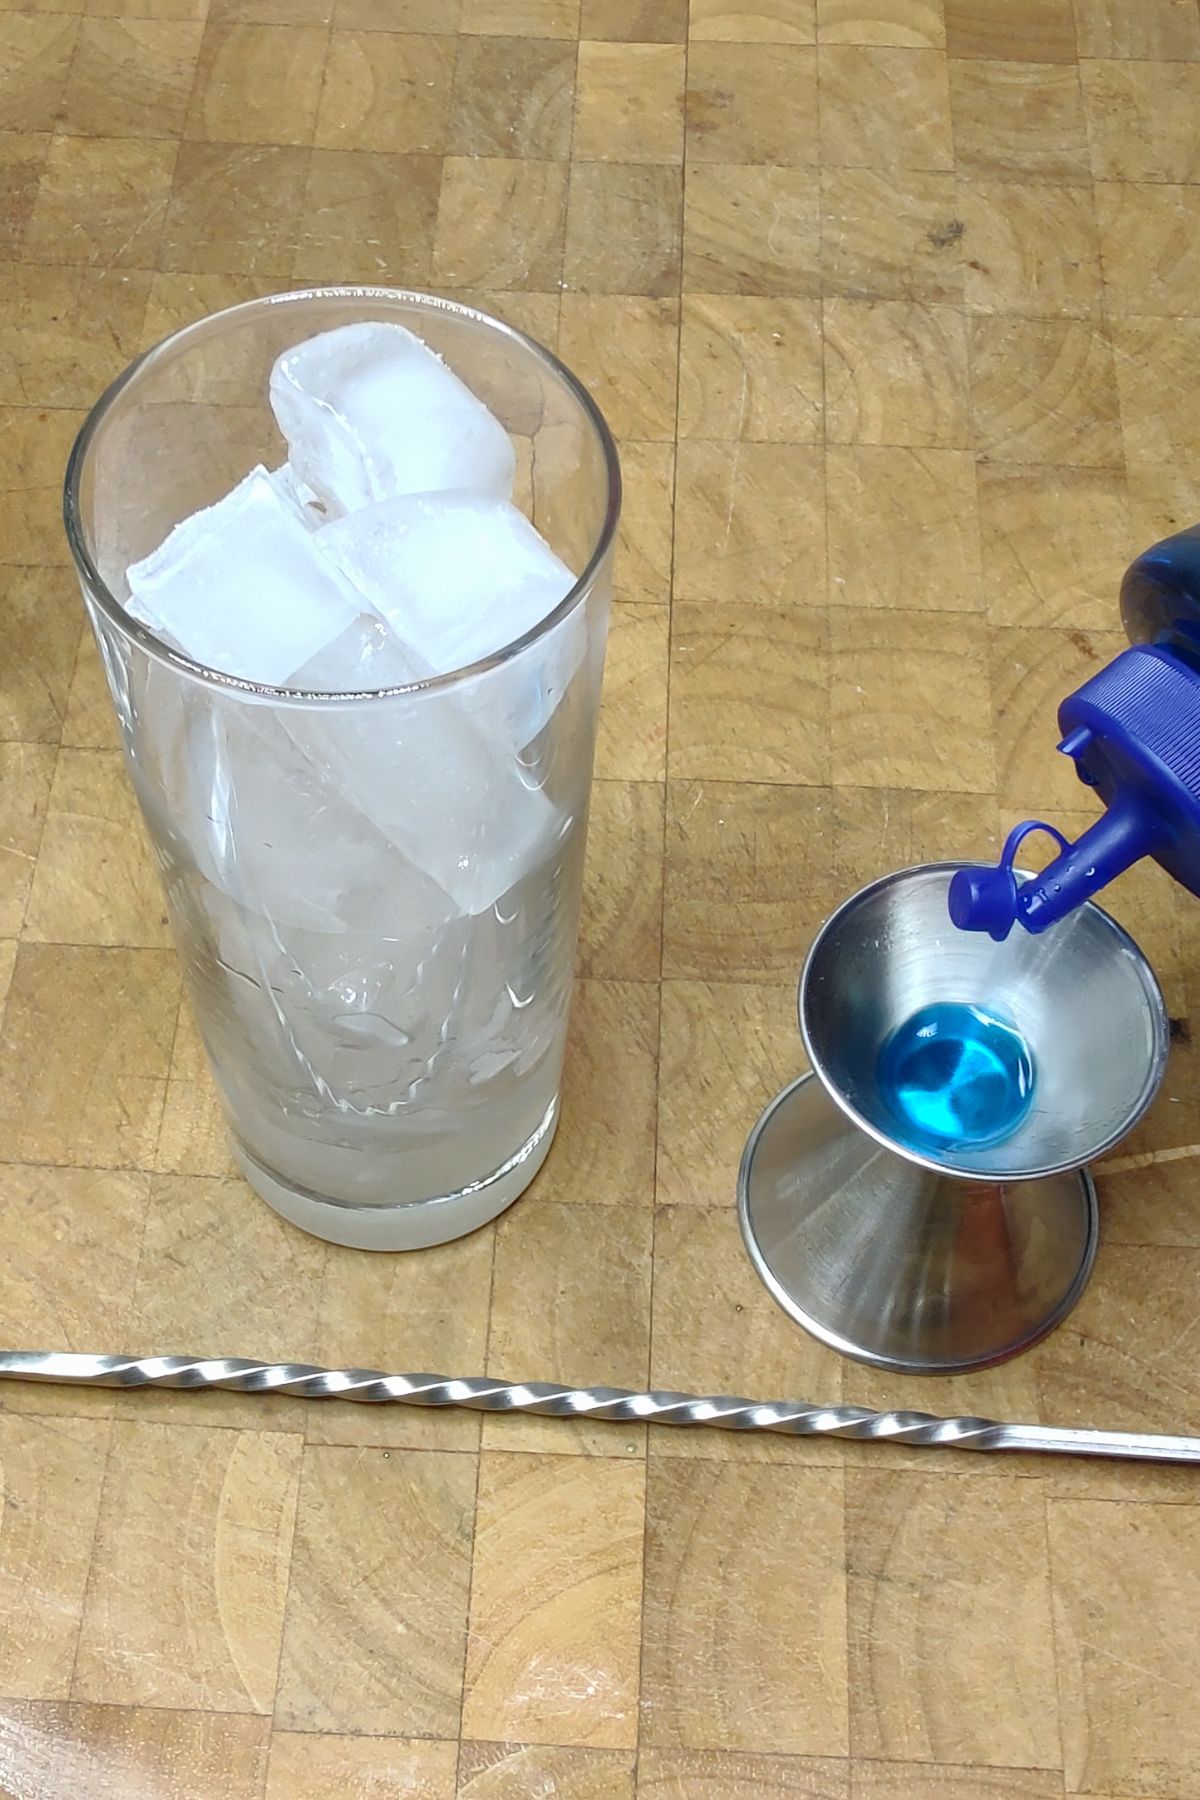 Pouring blue curacao into a jigger.